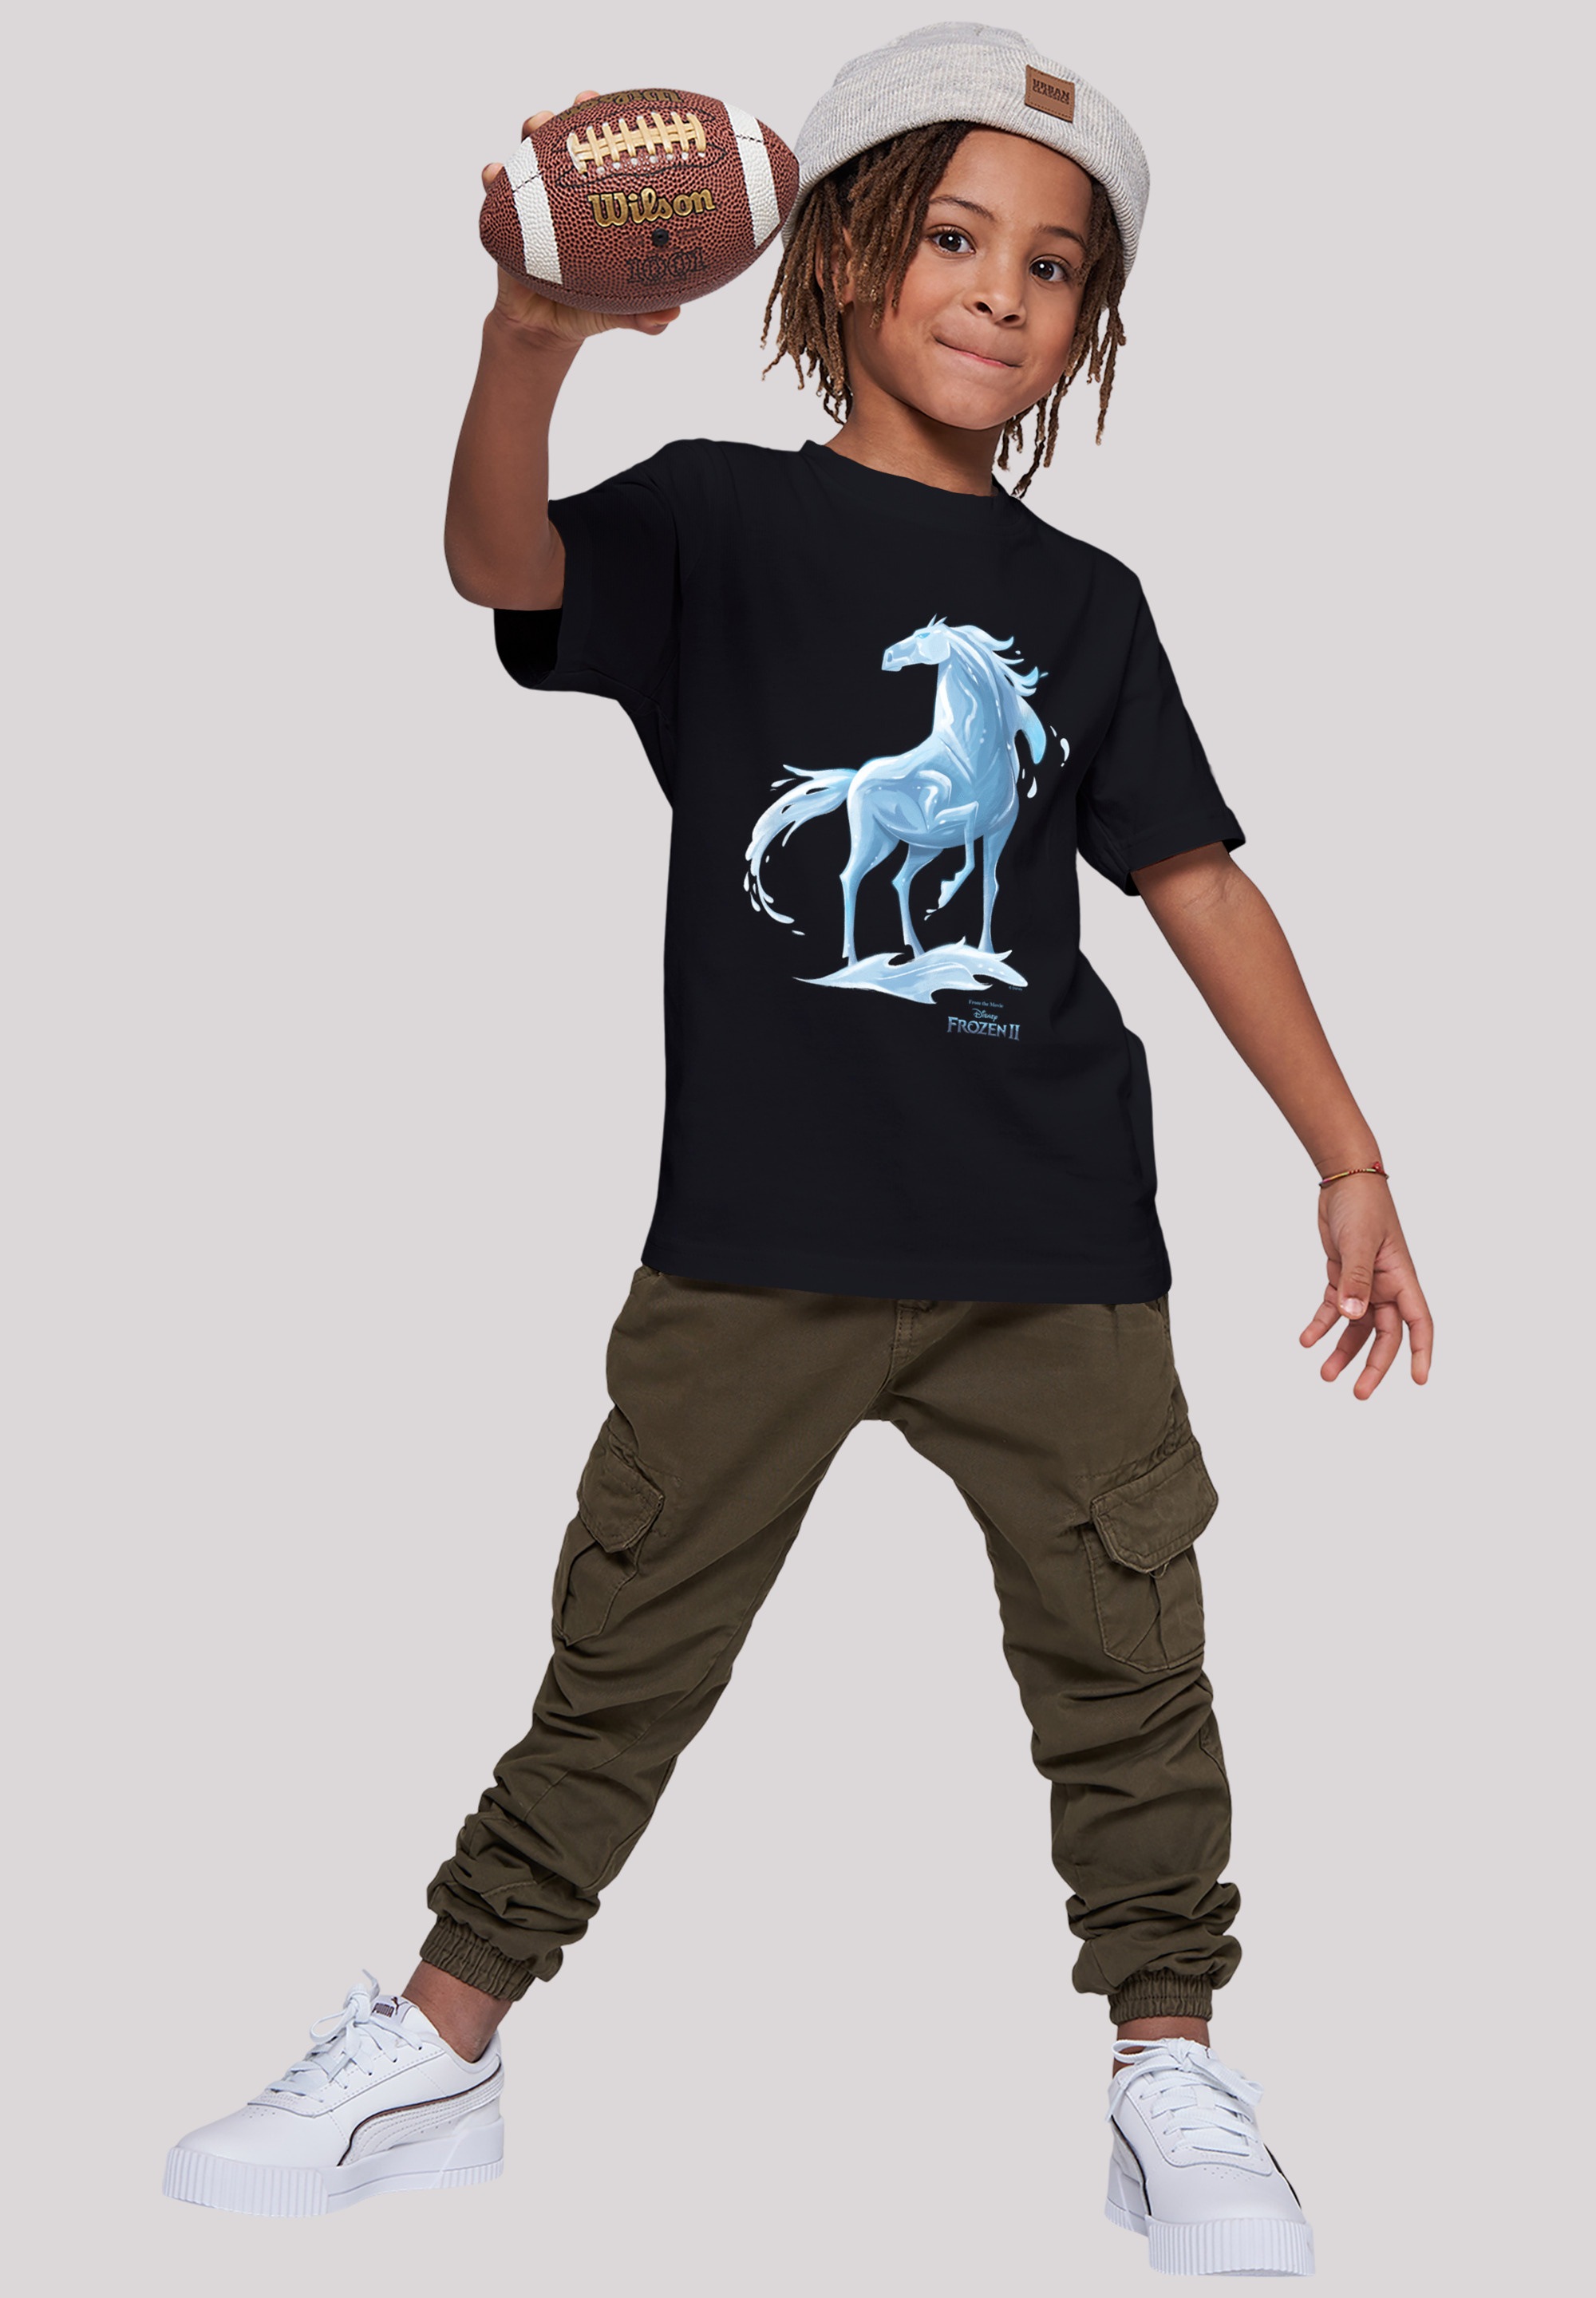 Nokk T-Shirt Frozen online Kinder,Premium BAUR 2 F4NT4STIC »Disney Pferd«, | Merch,Jungen,Mädchen,Bedruckt Wassergeist Unisex kaufen